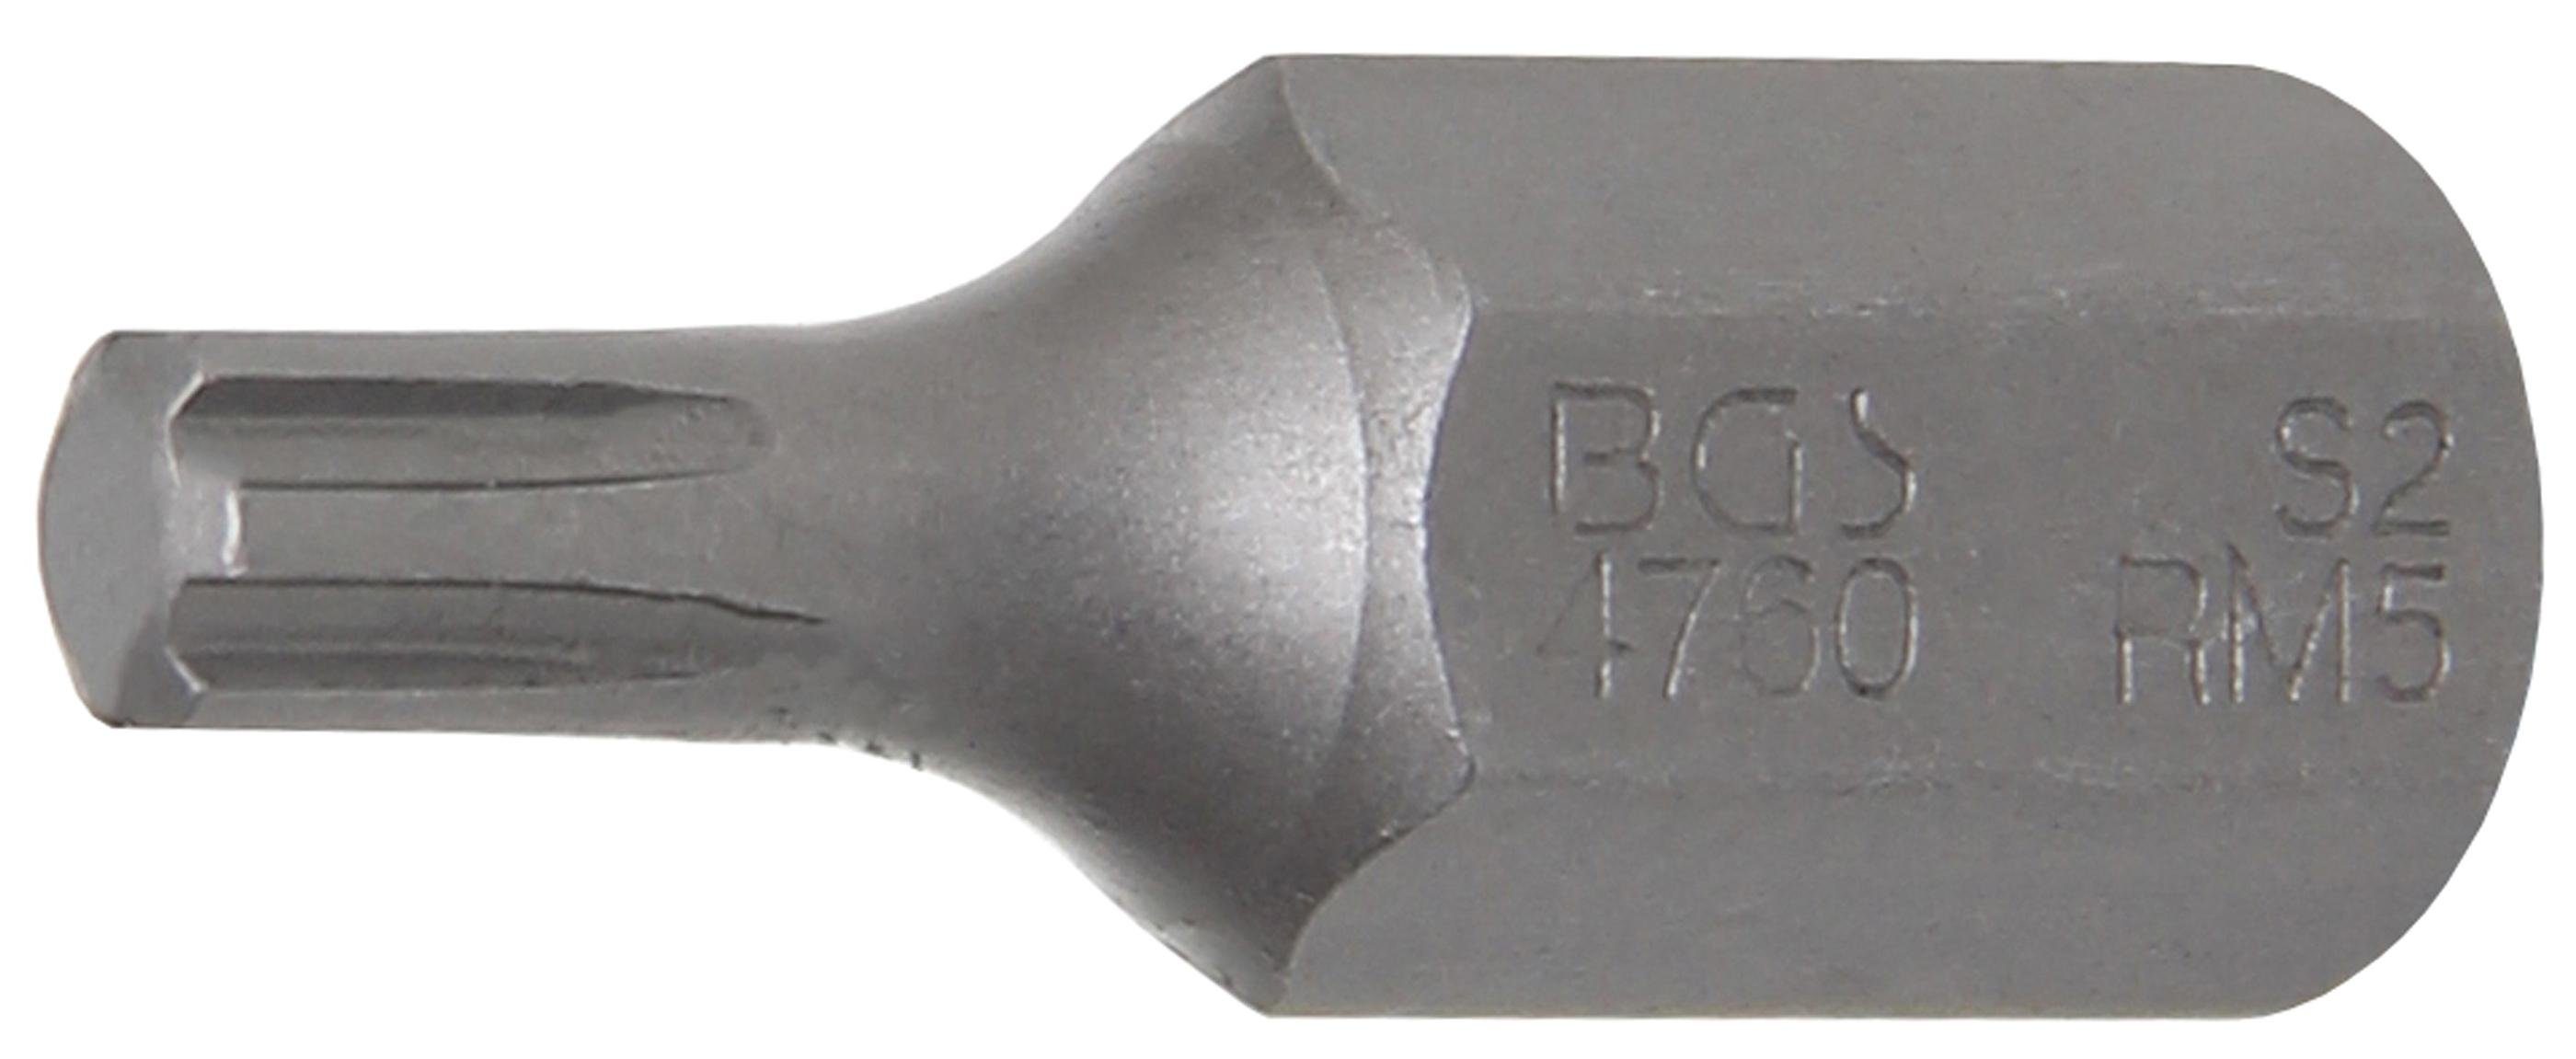 BGS technic Bit-Schraubendreher Bit, Antrieb Außensechskant 10 mm (3/8), Keil-Profil (für RIBE) M5